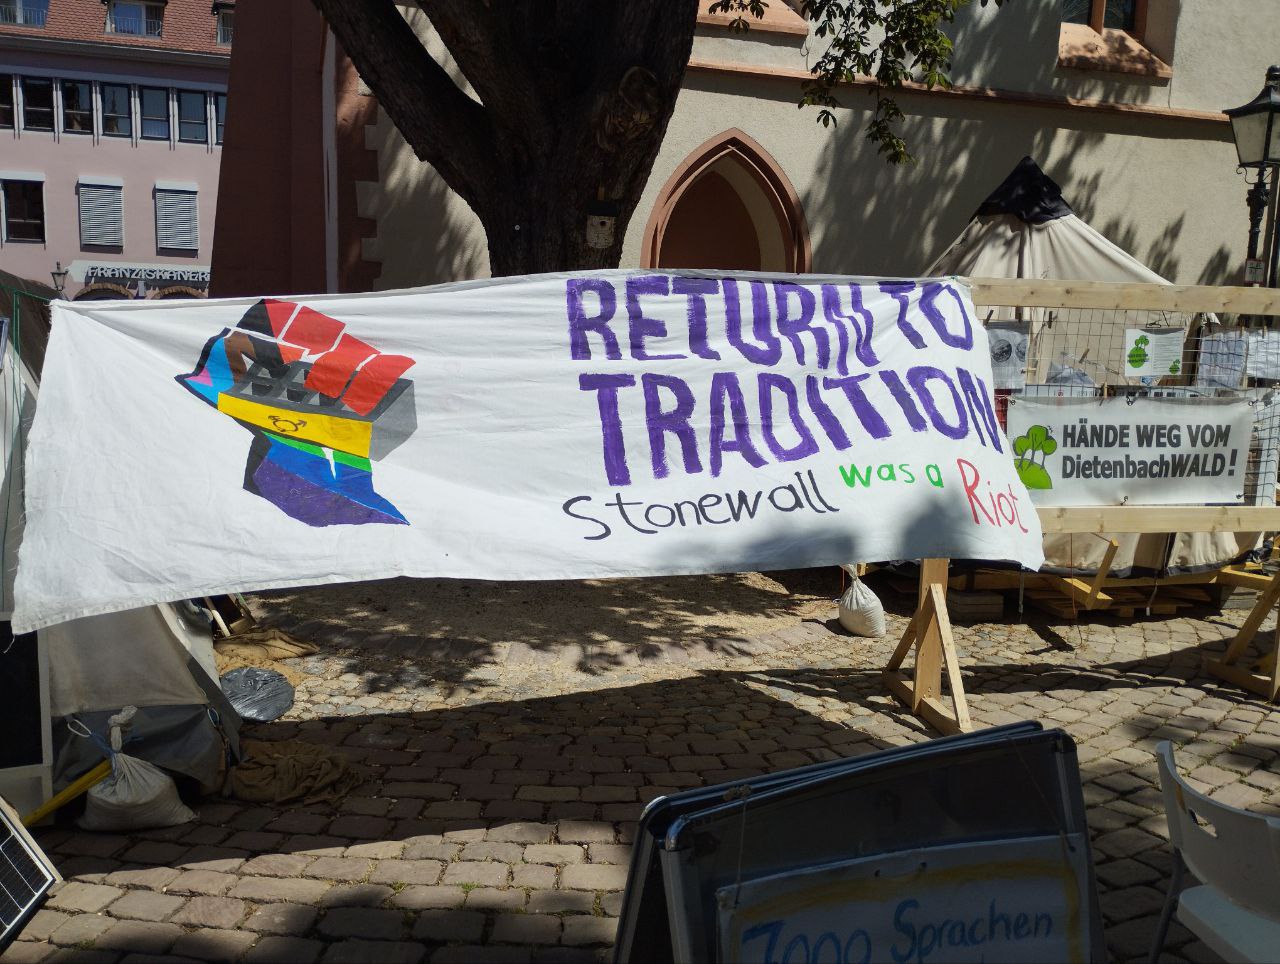 Regenbogenfaust und der Text "Return to Tradition - Stonewall was a Riot"